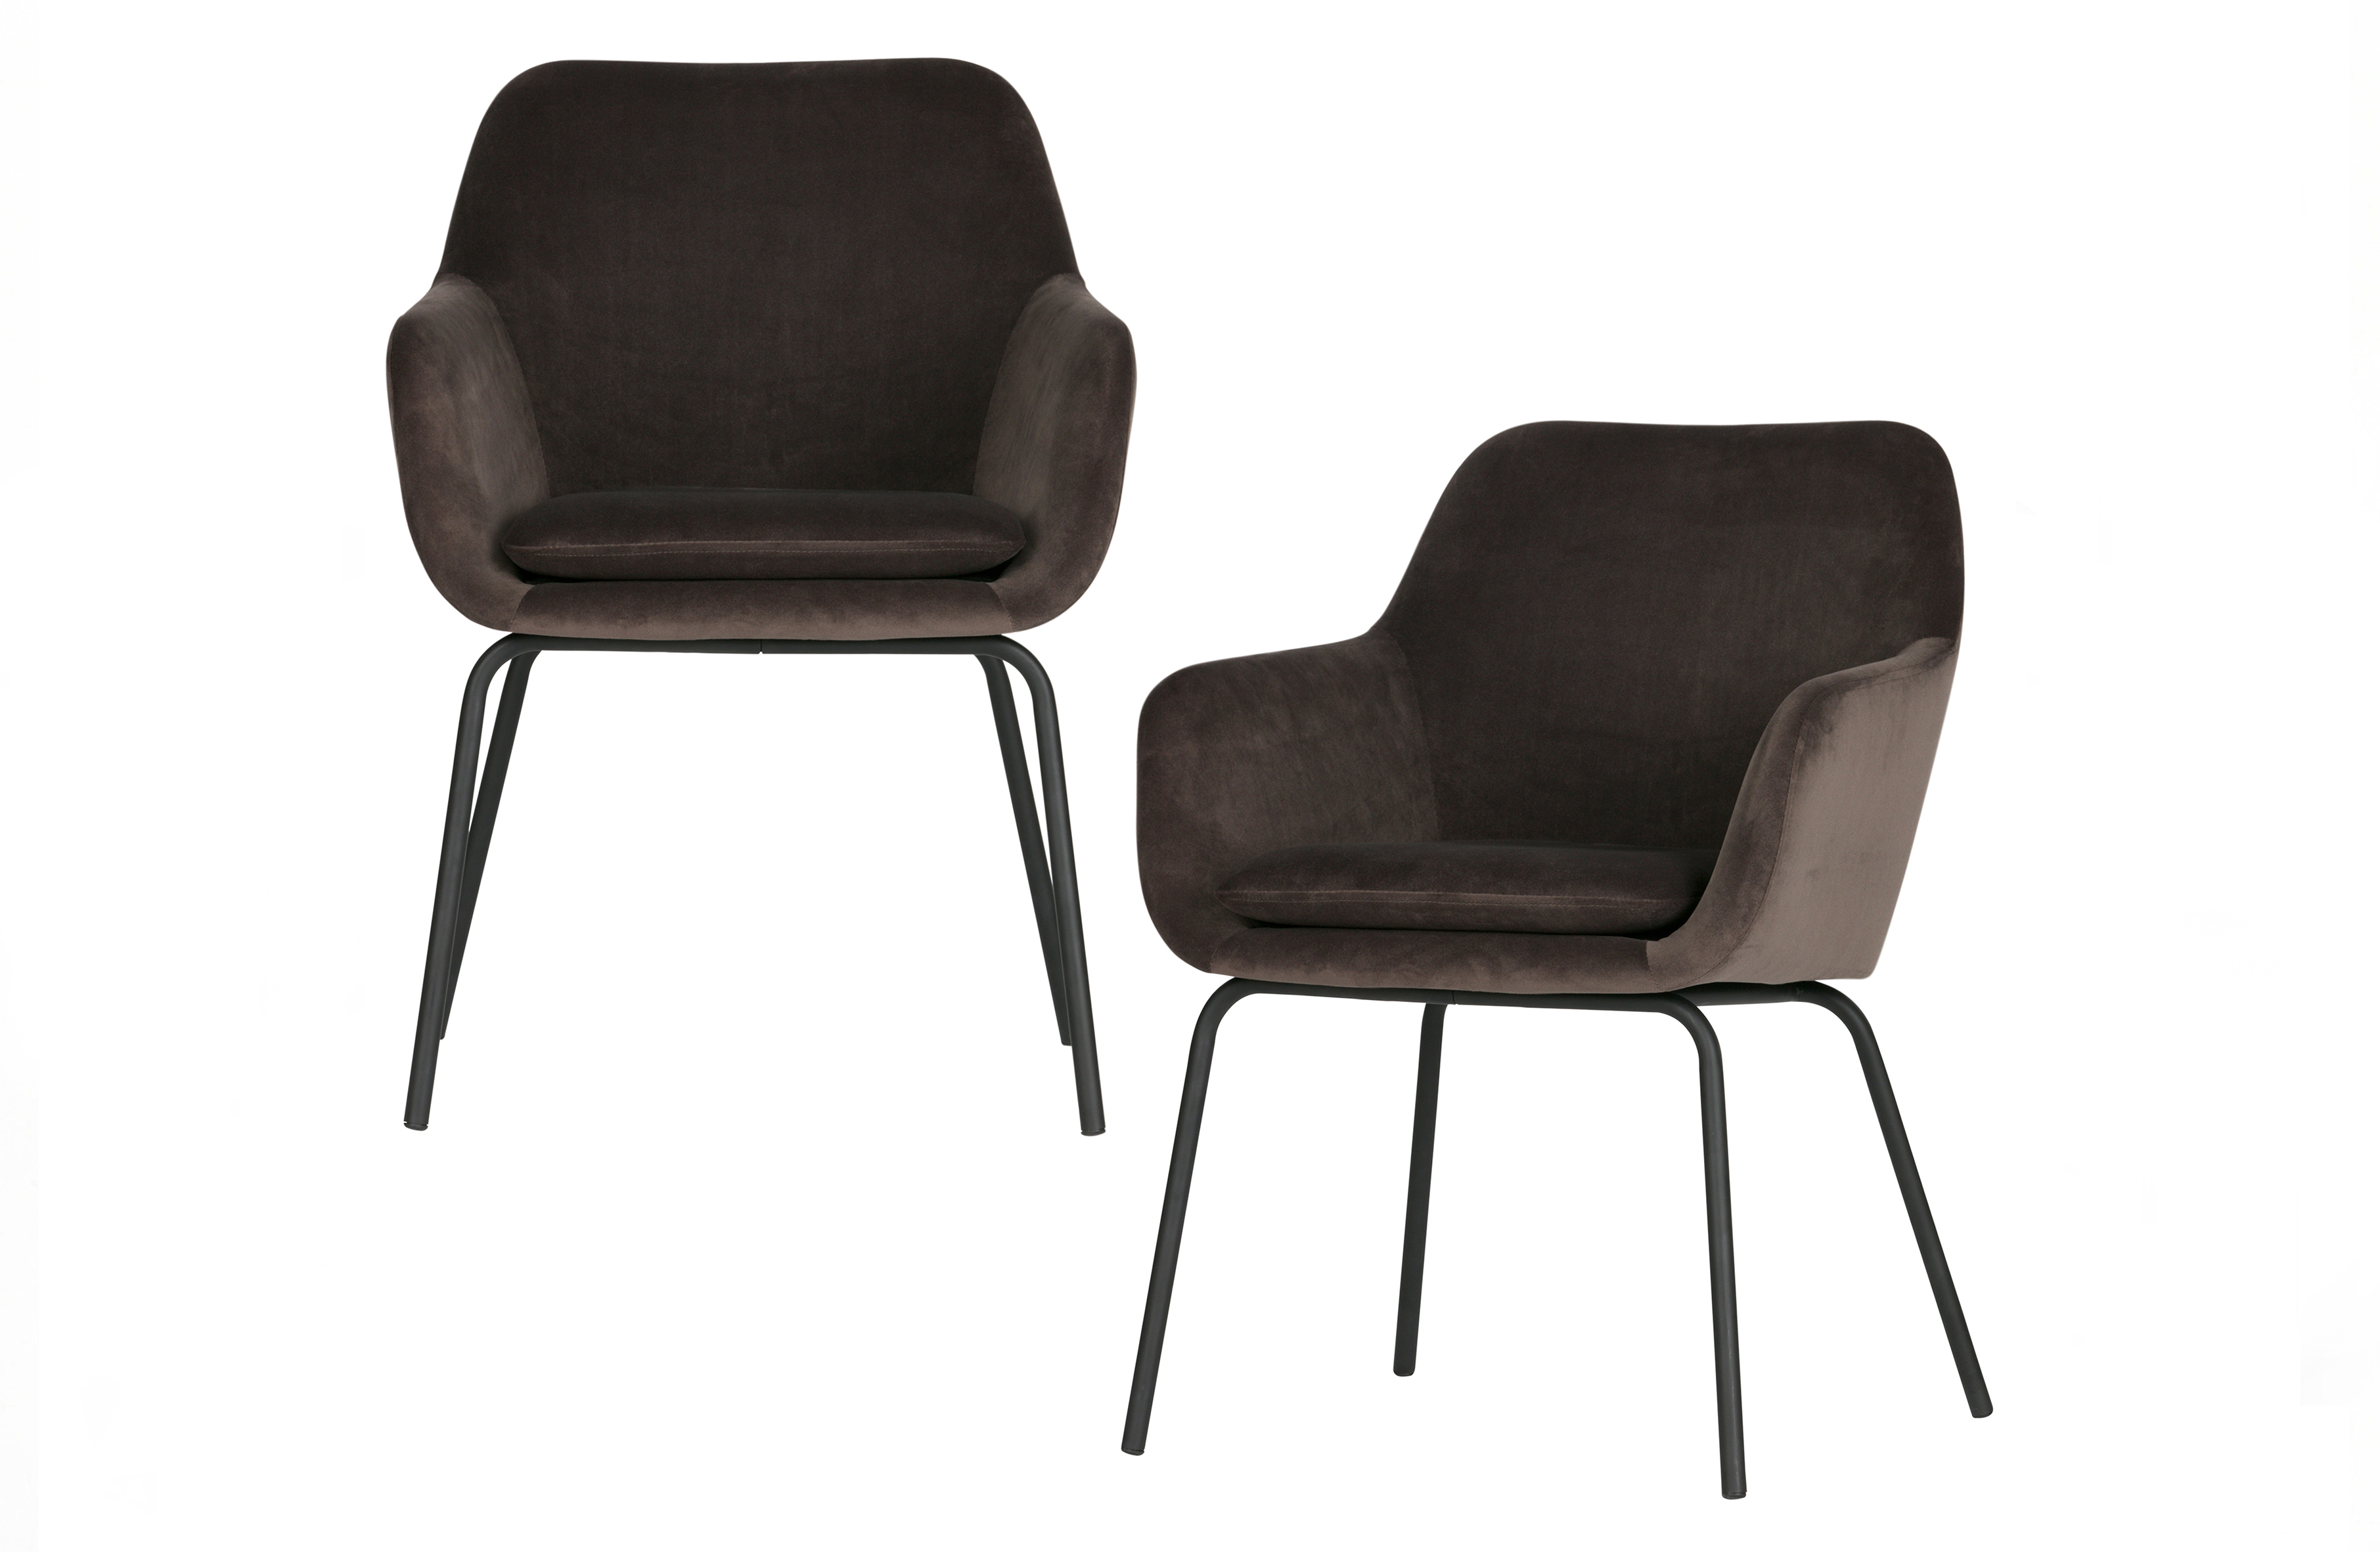 VTWONEN Mood spisebordsstol, m. armlæn - antracitgrå fløjl polyester og sort metal (sæt med 2)